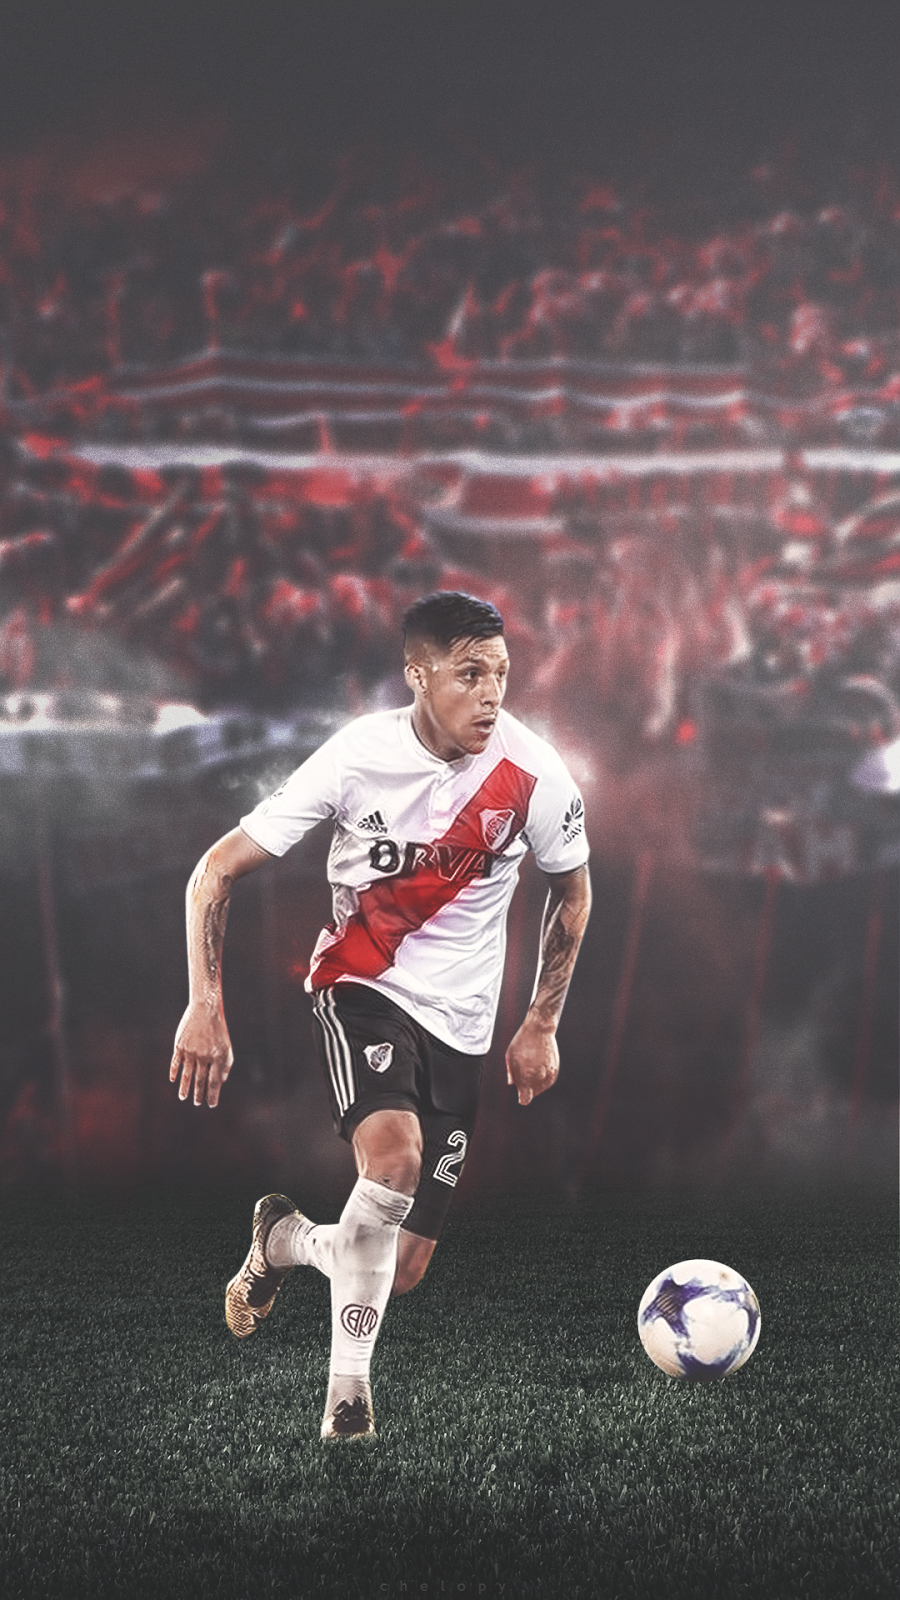 De River Plate 2018 - HD Wallpaper 